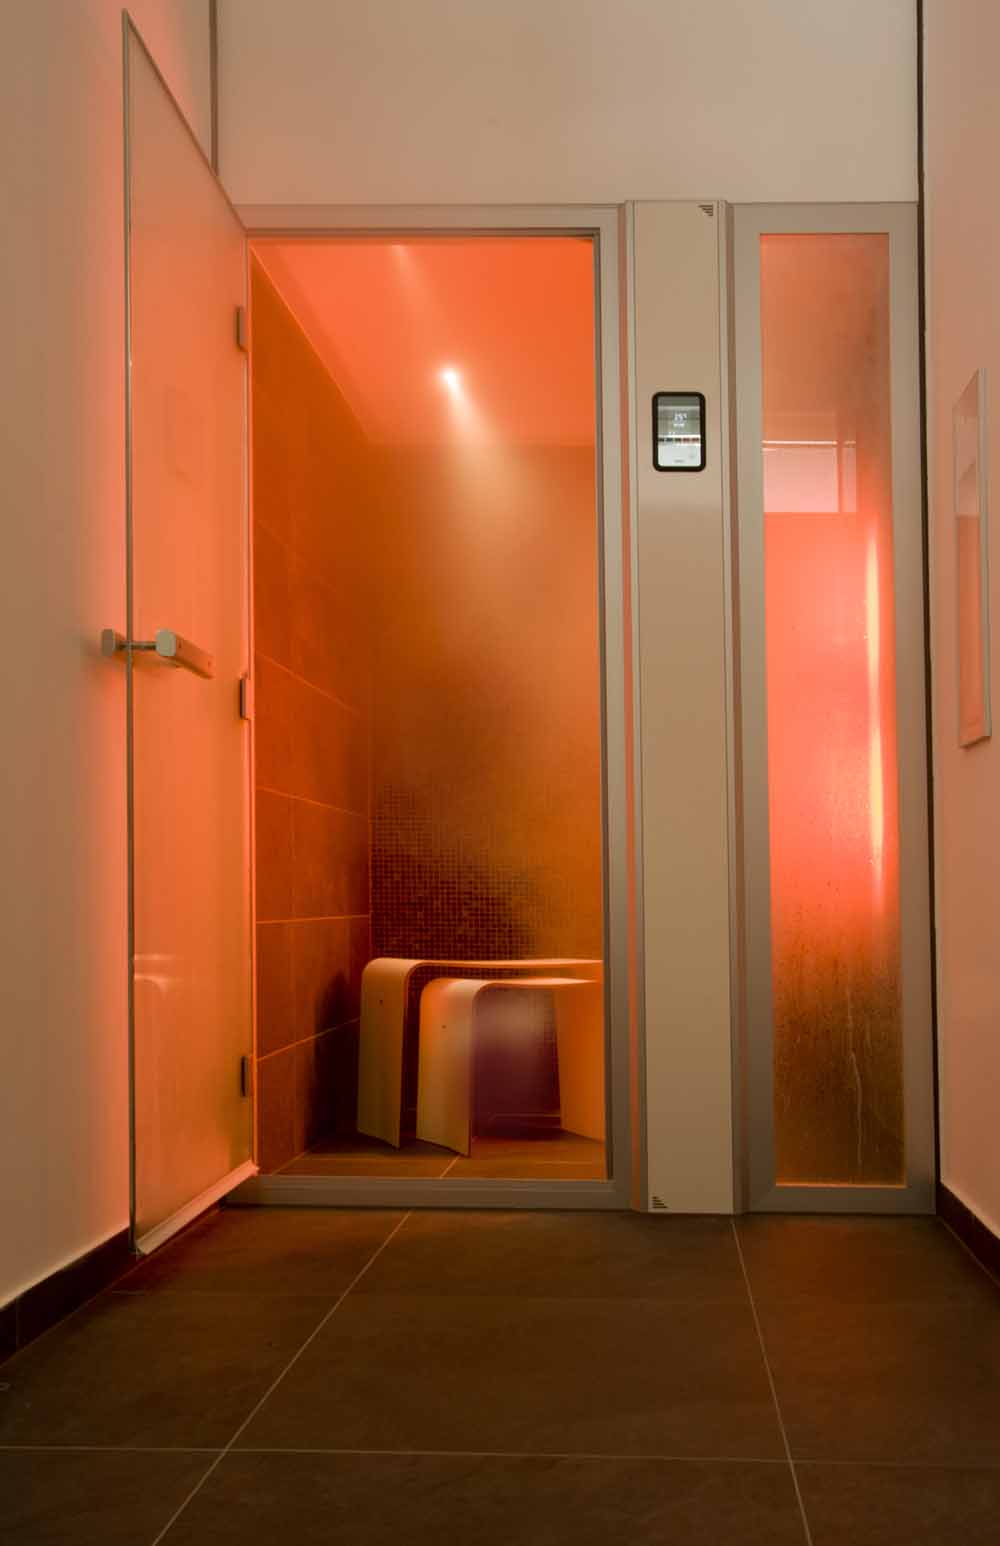  Klaus Schlenker GmbH, Tylö, Infarotkabine, Vitamin D, Infrarotlicht oder eine niedrige Menge UV-Licht in eine Dusche oder Dampfdusche integriert